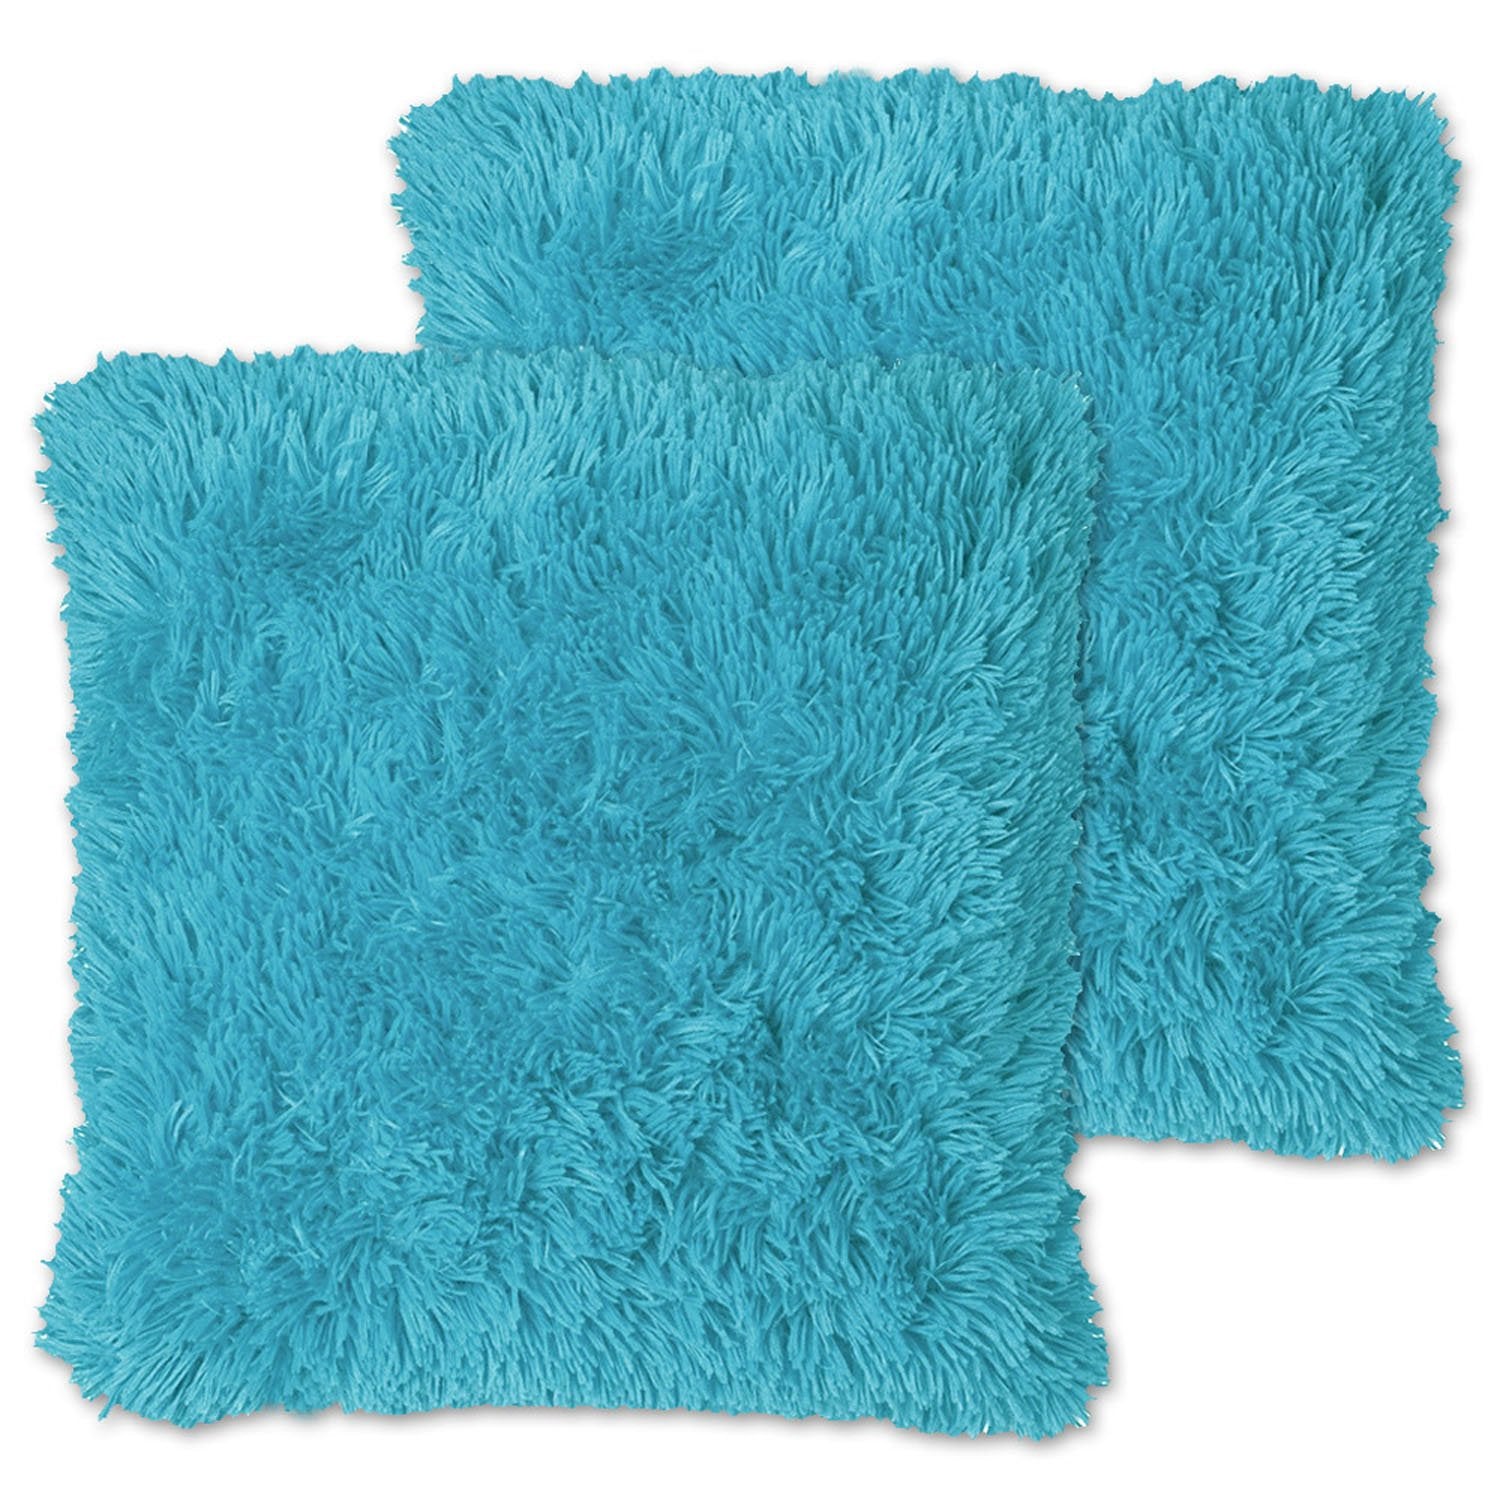 Decorative Plush Throw Pillows Turquoise - Top